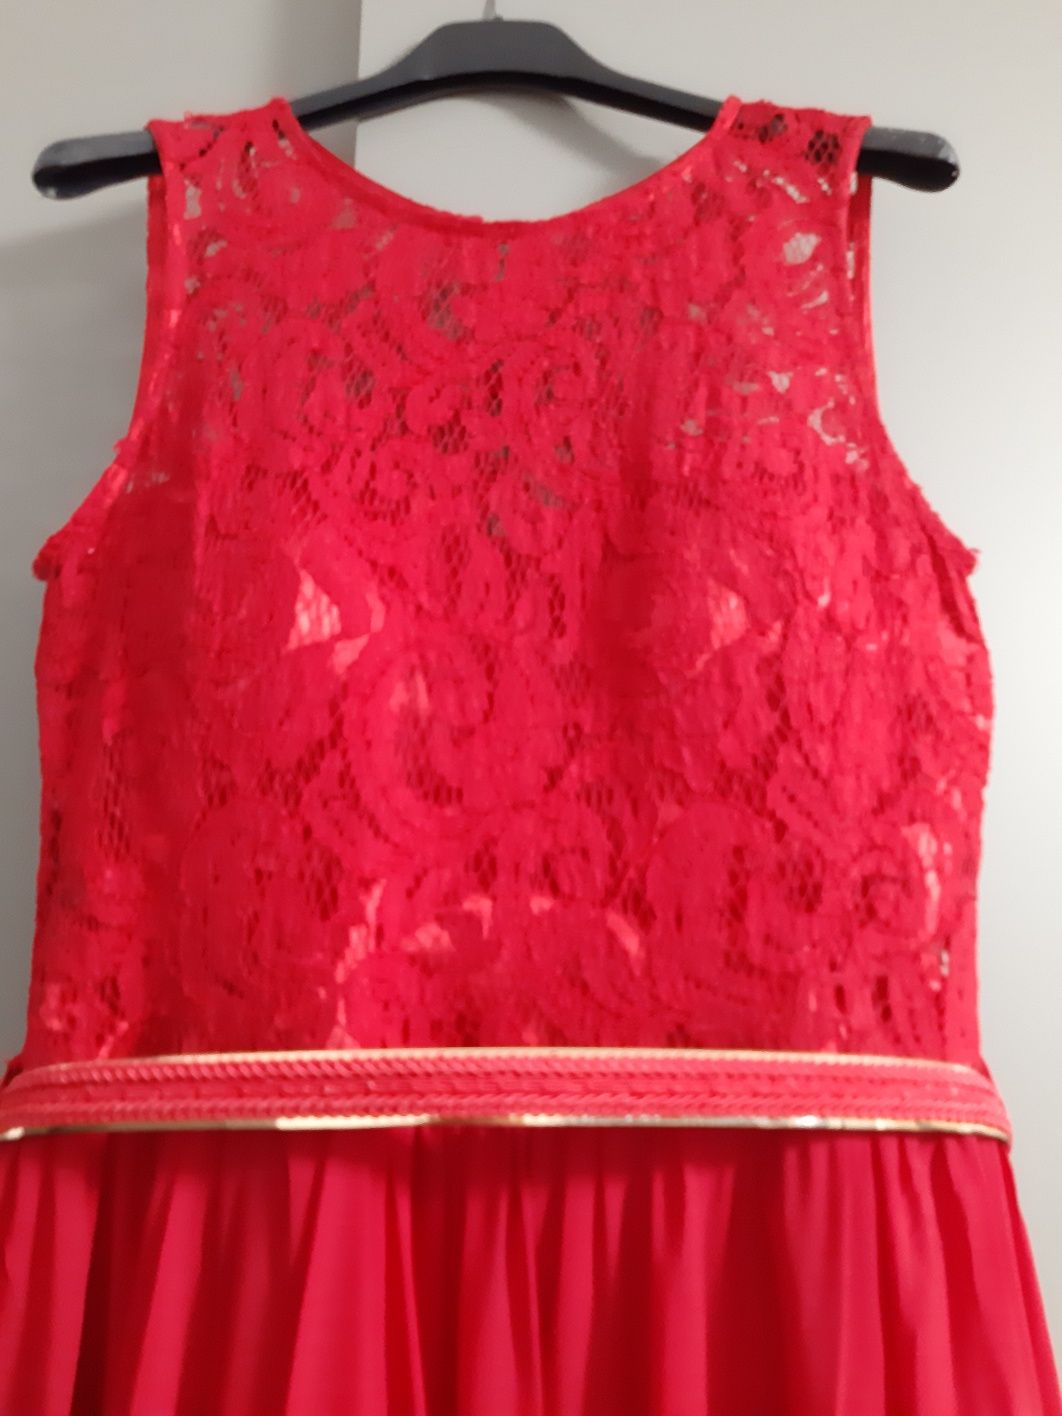 Rochie lungă roșie